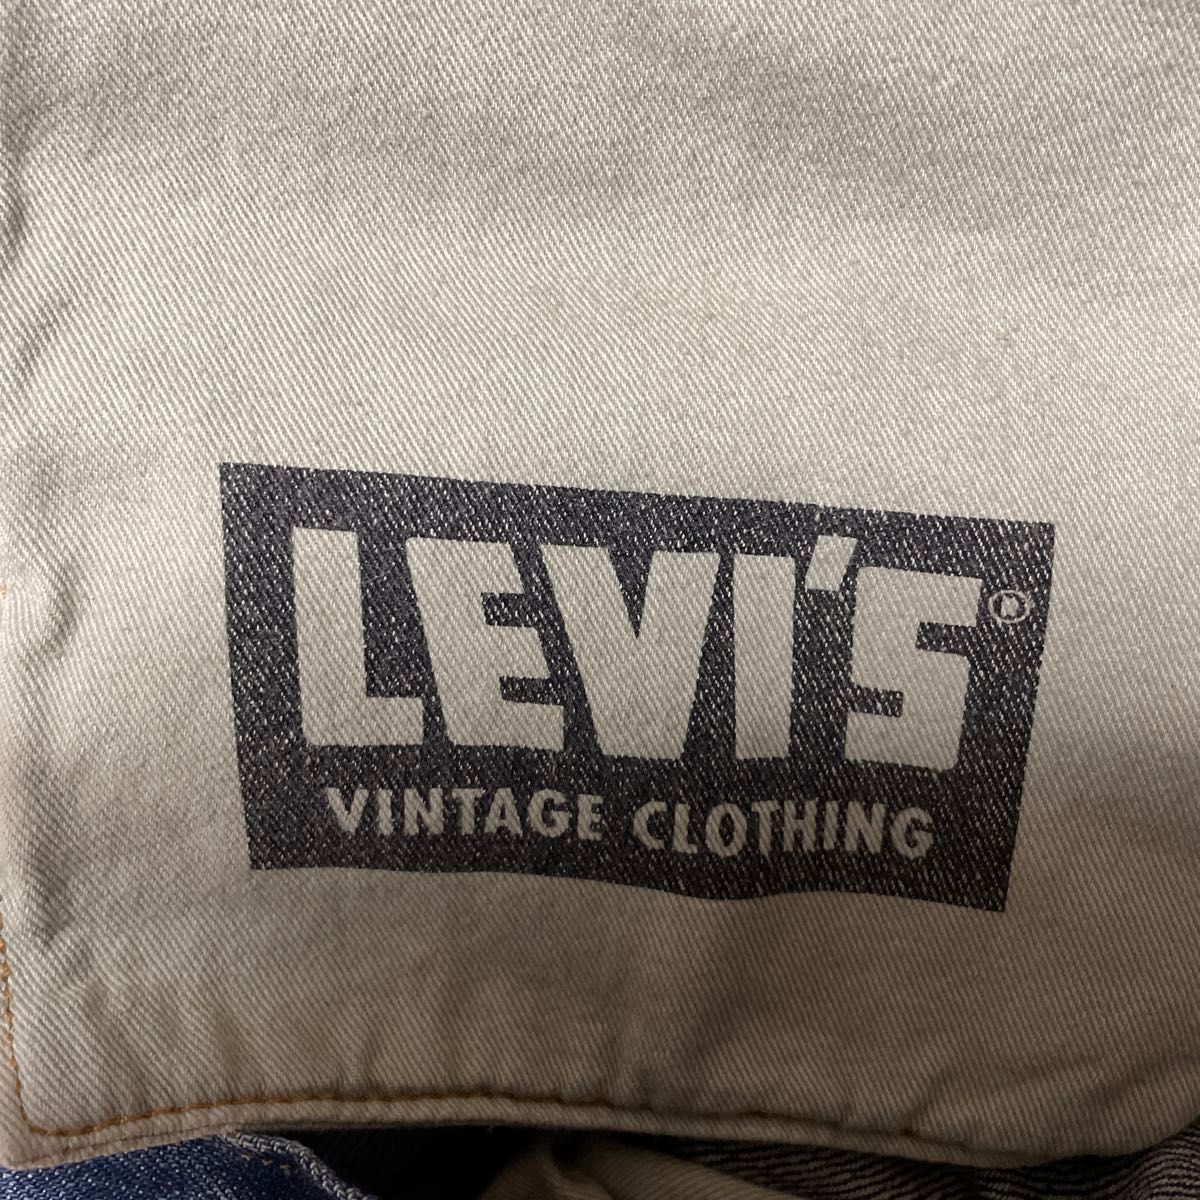 LEVI'S VINTAGE CLOTHING 1947 W28 L32